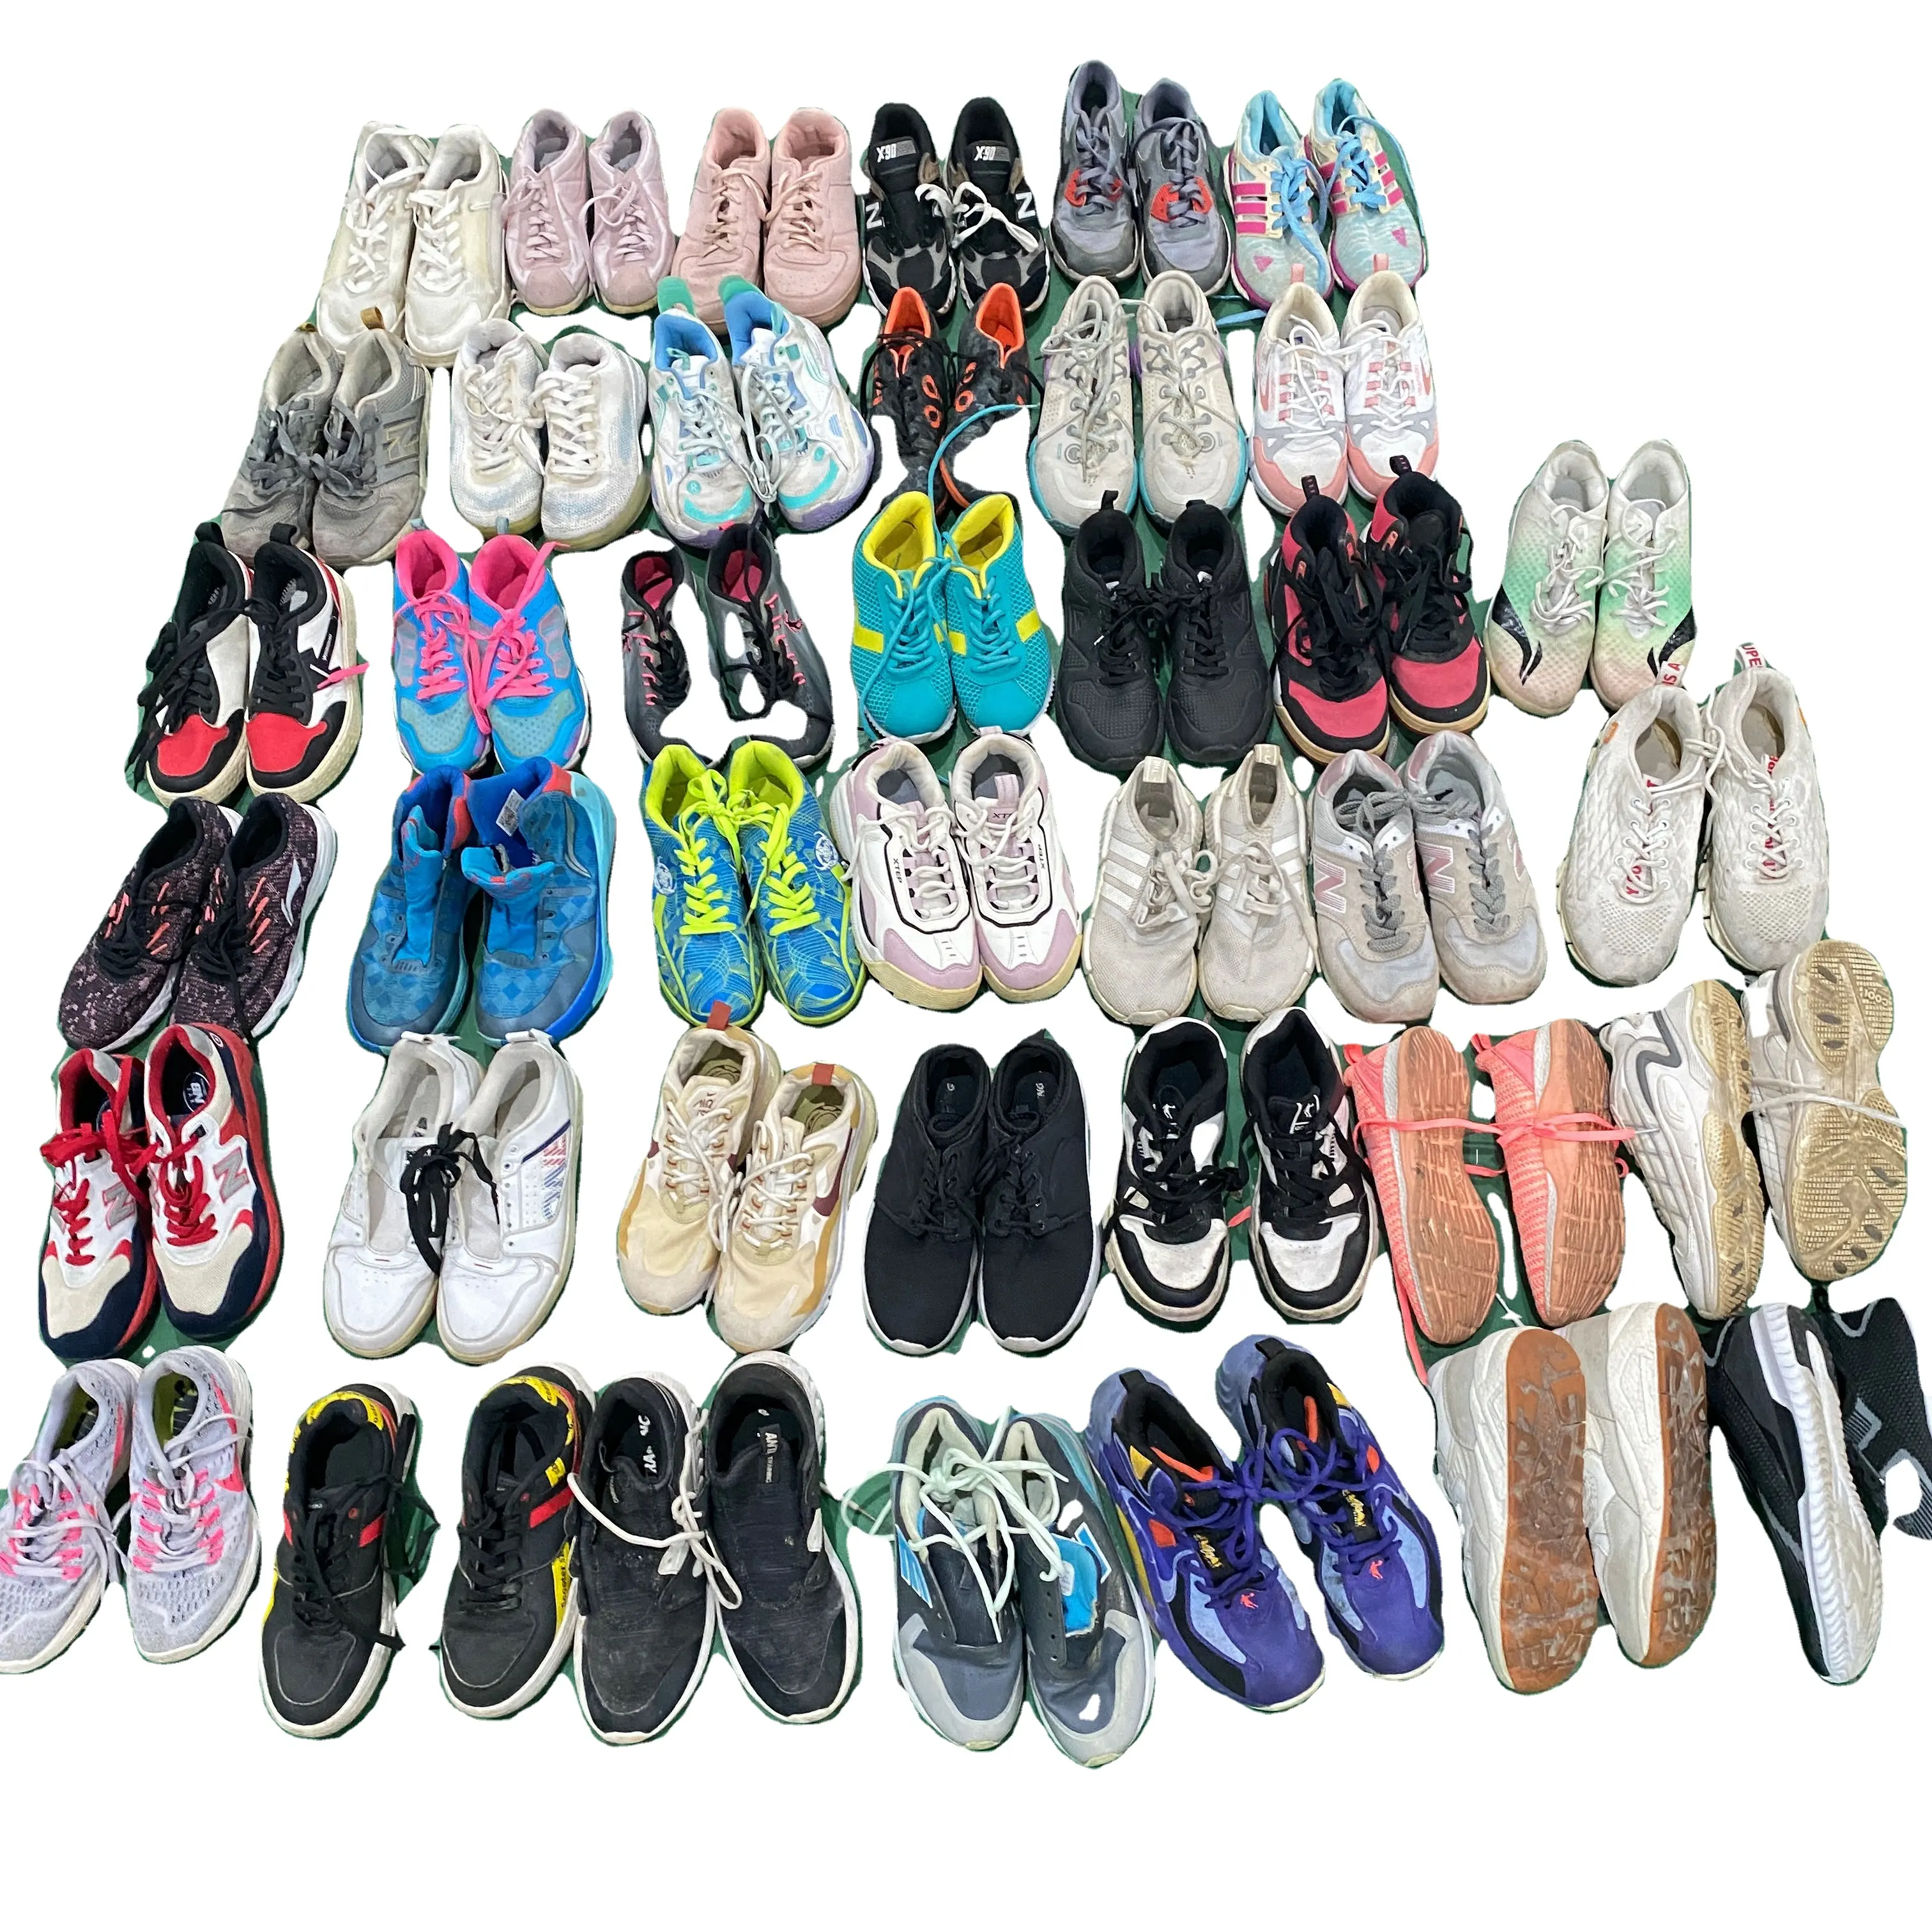 Chaussures de sport d'occasion pour femmes baskets de grande taille pour dames vêtements de sport mixtes chaussures de course d'occasion vente en gros mixtes en balles